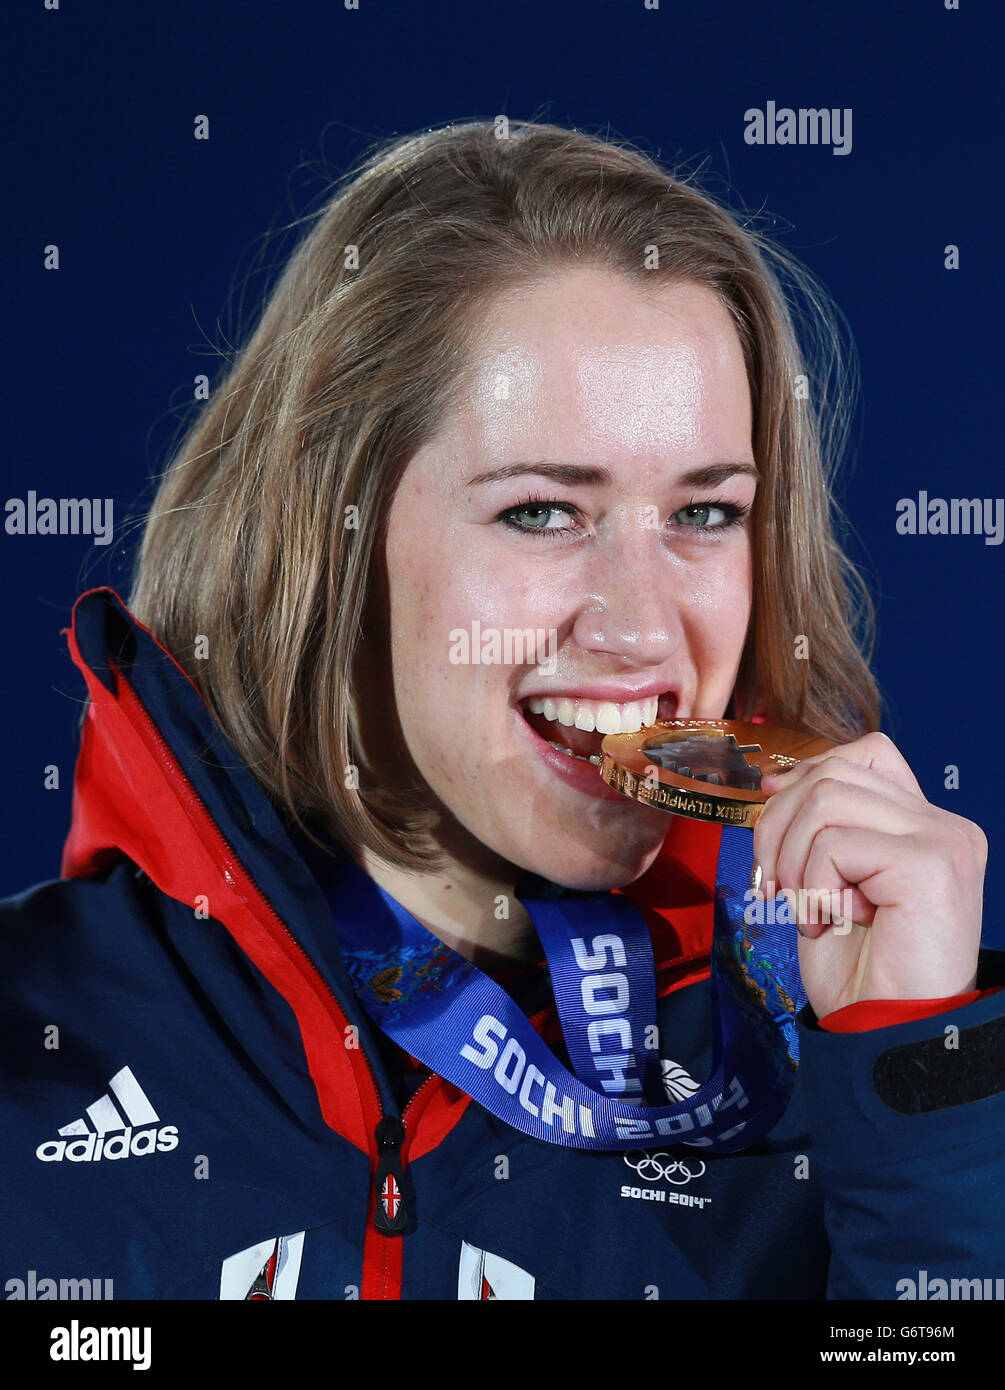 Großbritanniens Lizzy Yarnold mit ihrer Goldmedaille gewann sie im Frauenskelett, während der Medaillenzeremonie auf der Medals Plaza, bei den Olympischen Spielen 2014 in Sotschi, Russland. Stockfoto